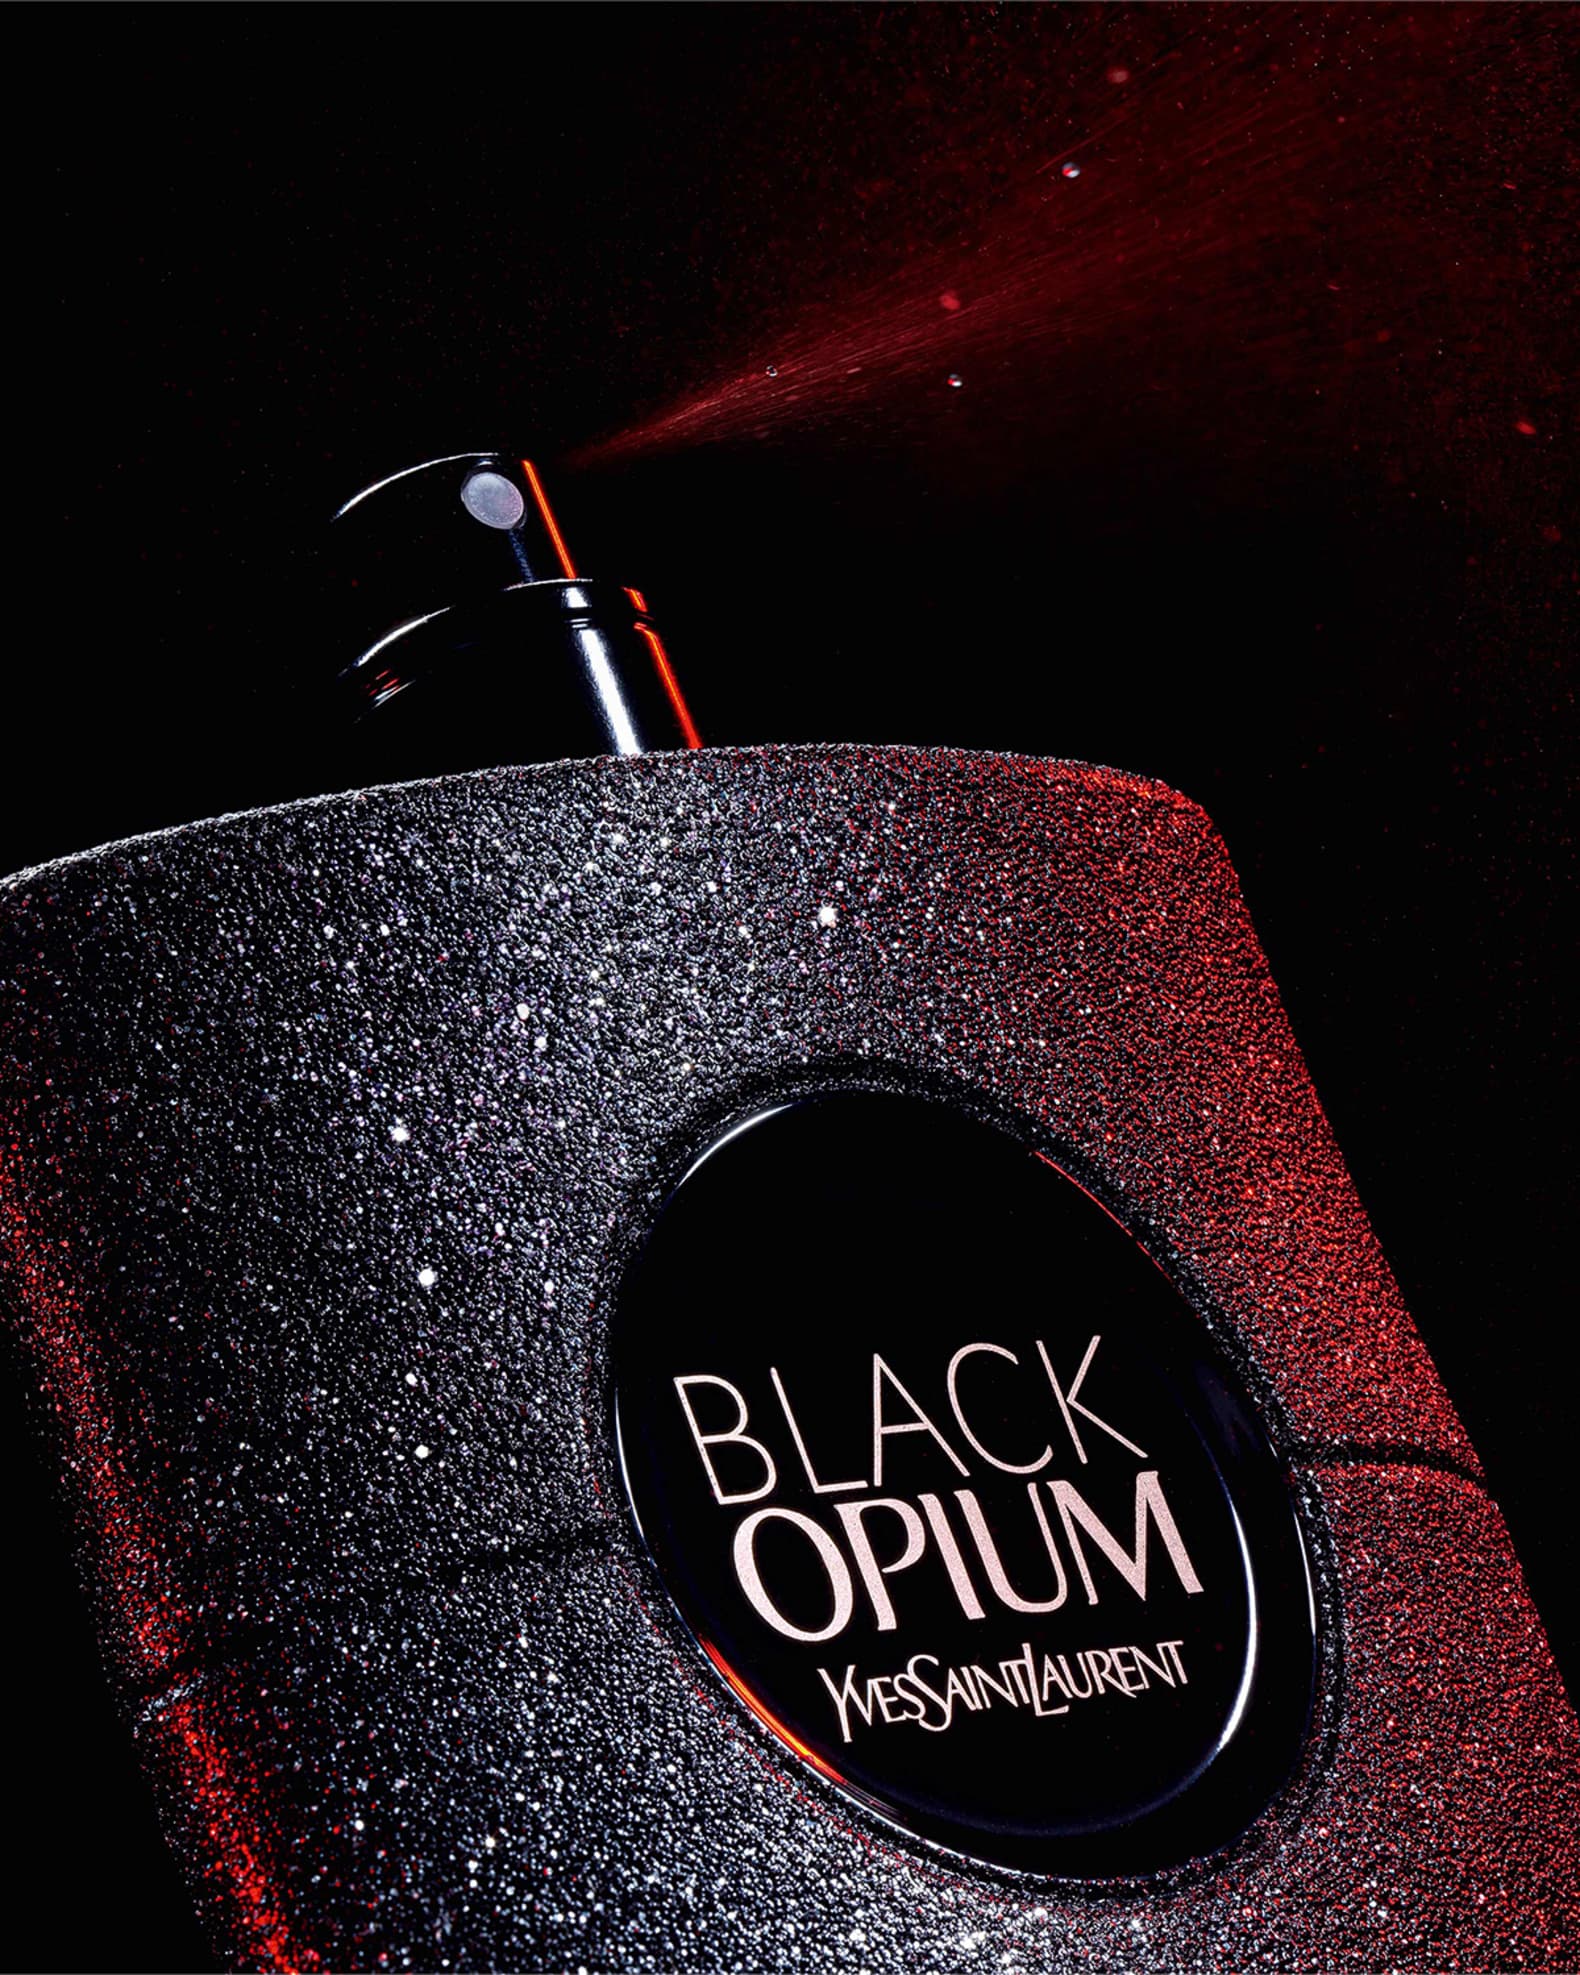 BLACK OPIUM EAU DE PARFUM EXTREME 3 fl oz For Woman by Yves Saint Laurent  NEW